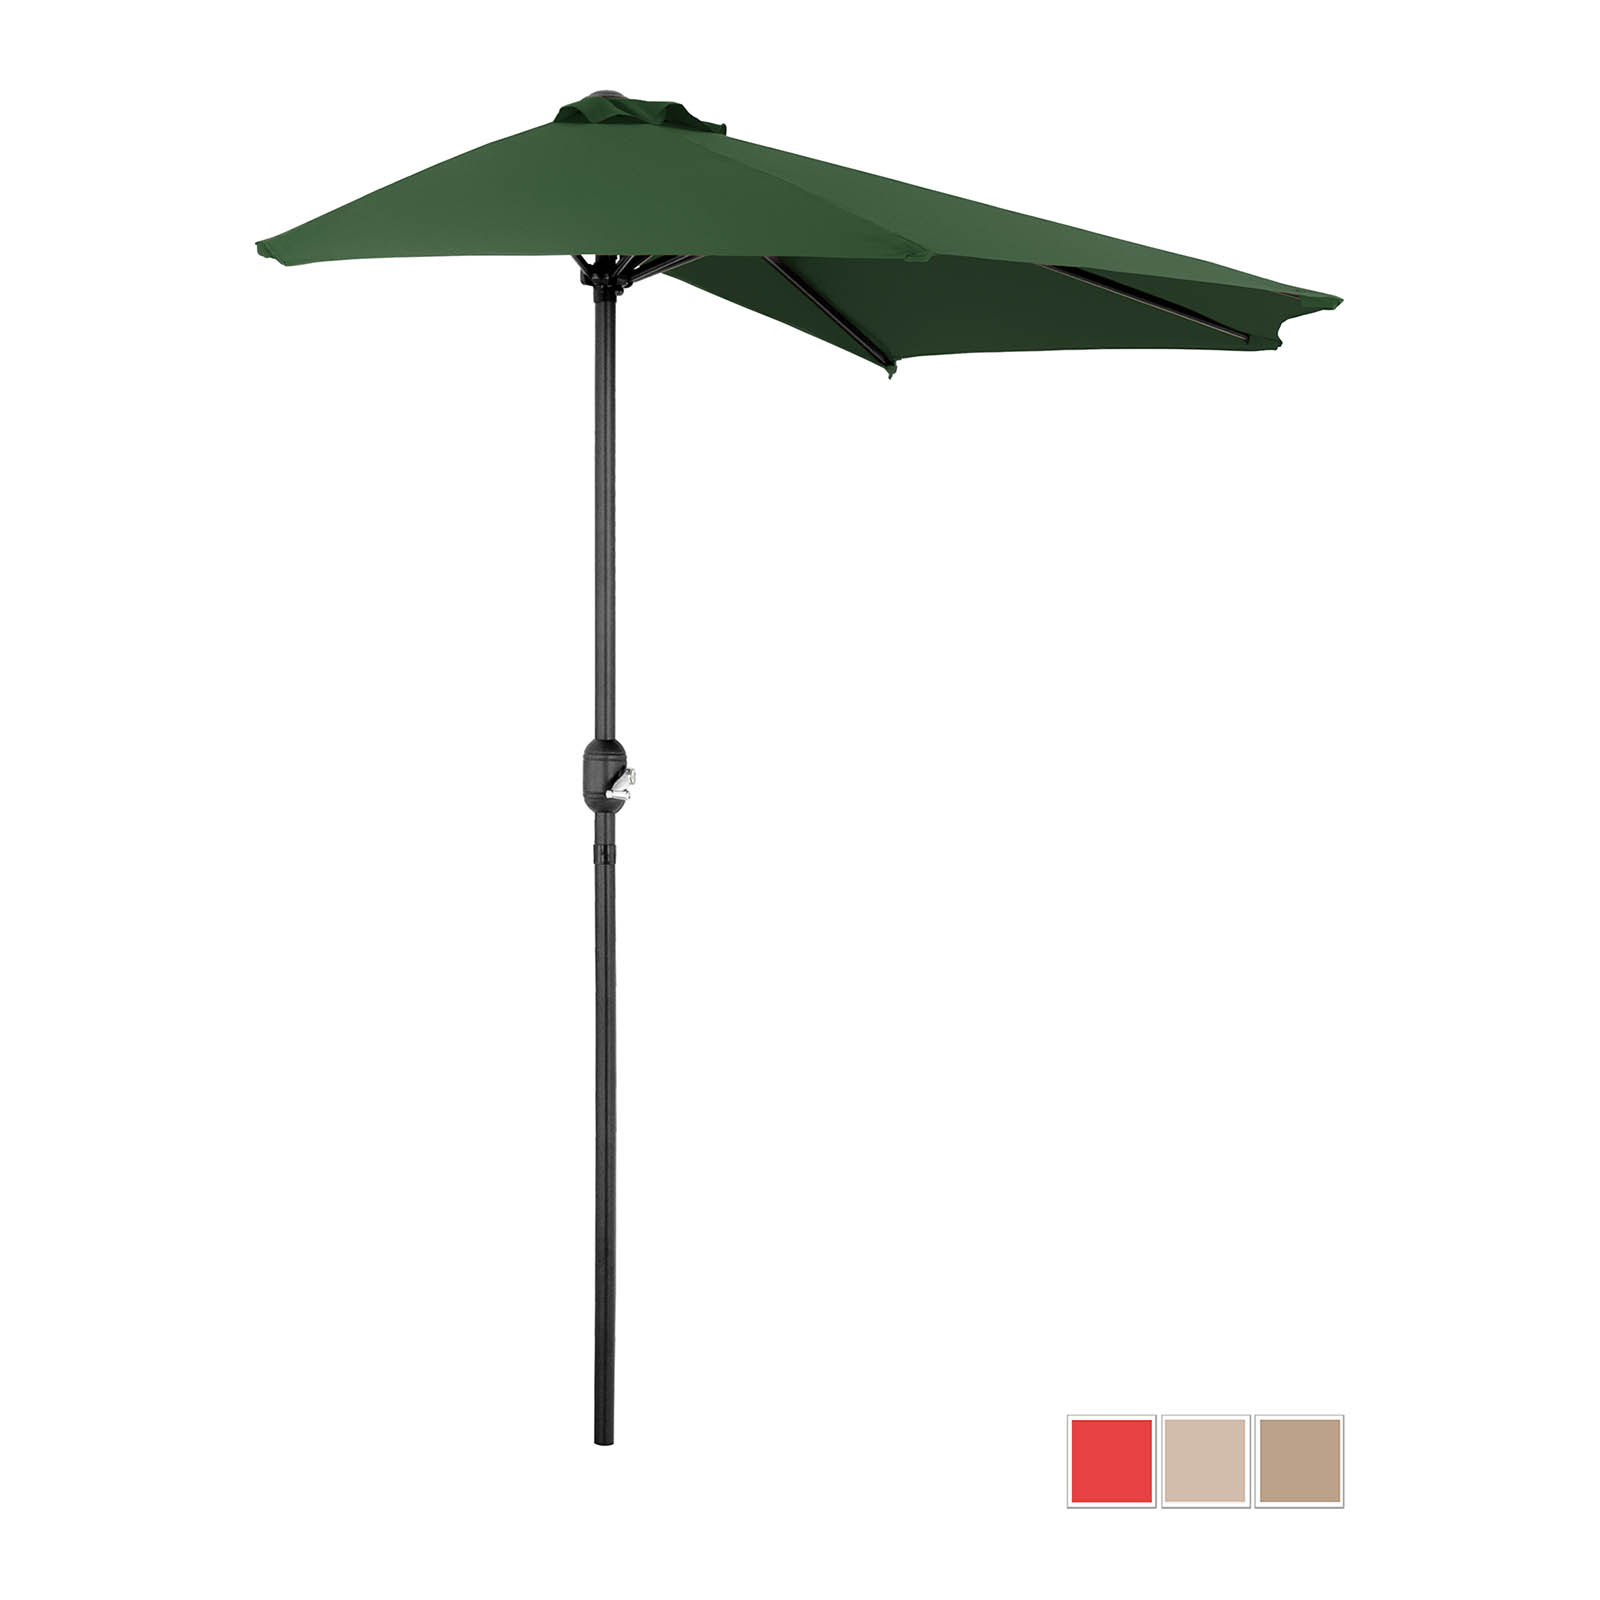 Jumătate de umbrelă - verde - pentagonală - 270 x 135 cm